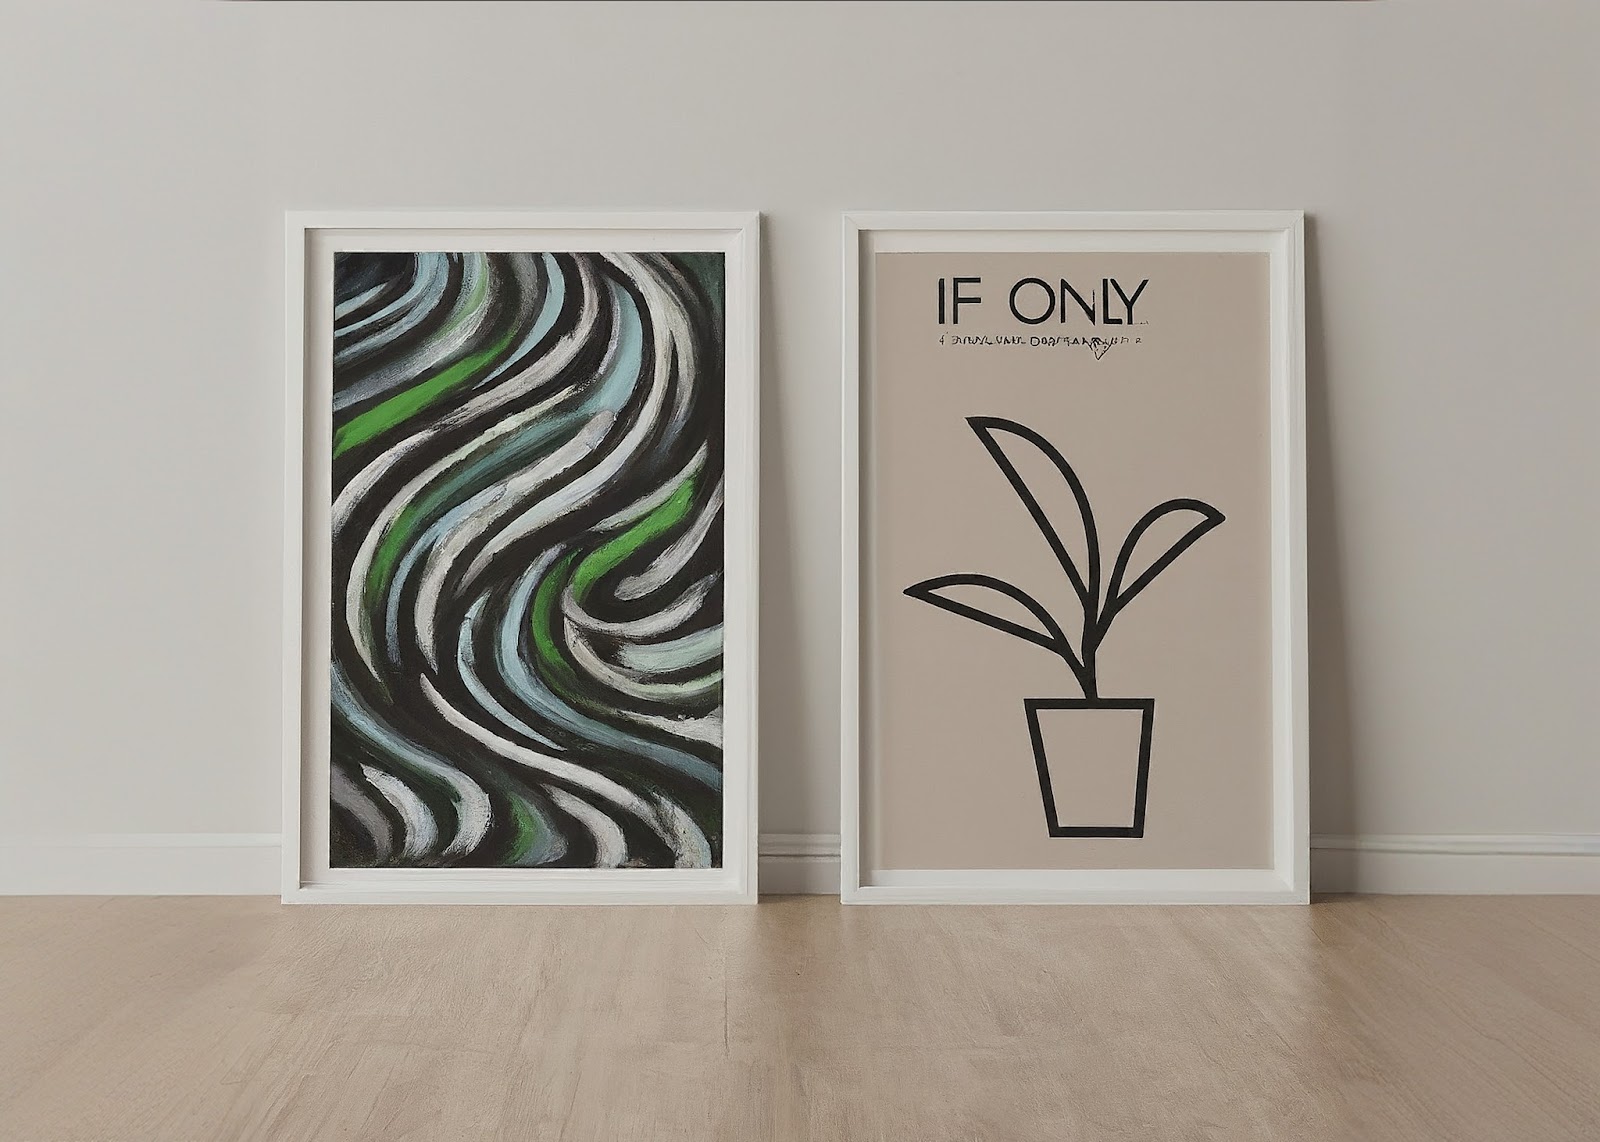 「if only」と書かれた色のない草と生い茂った草の二つのパネルが壁に立てられている